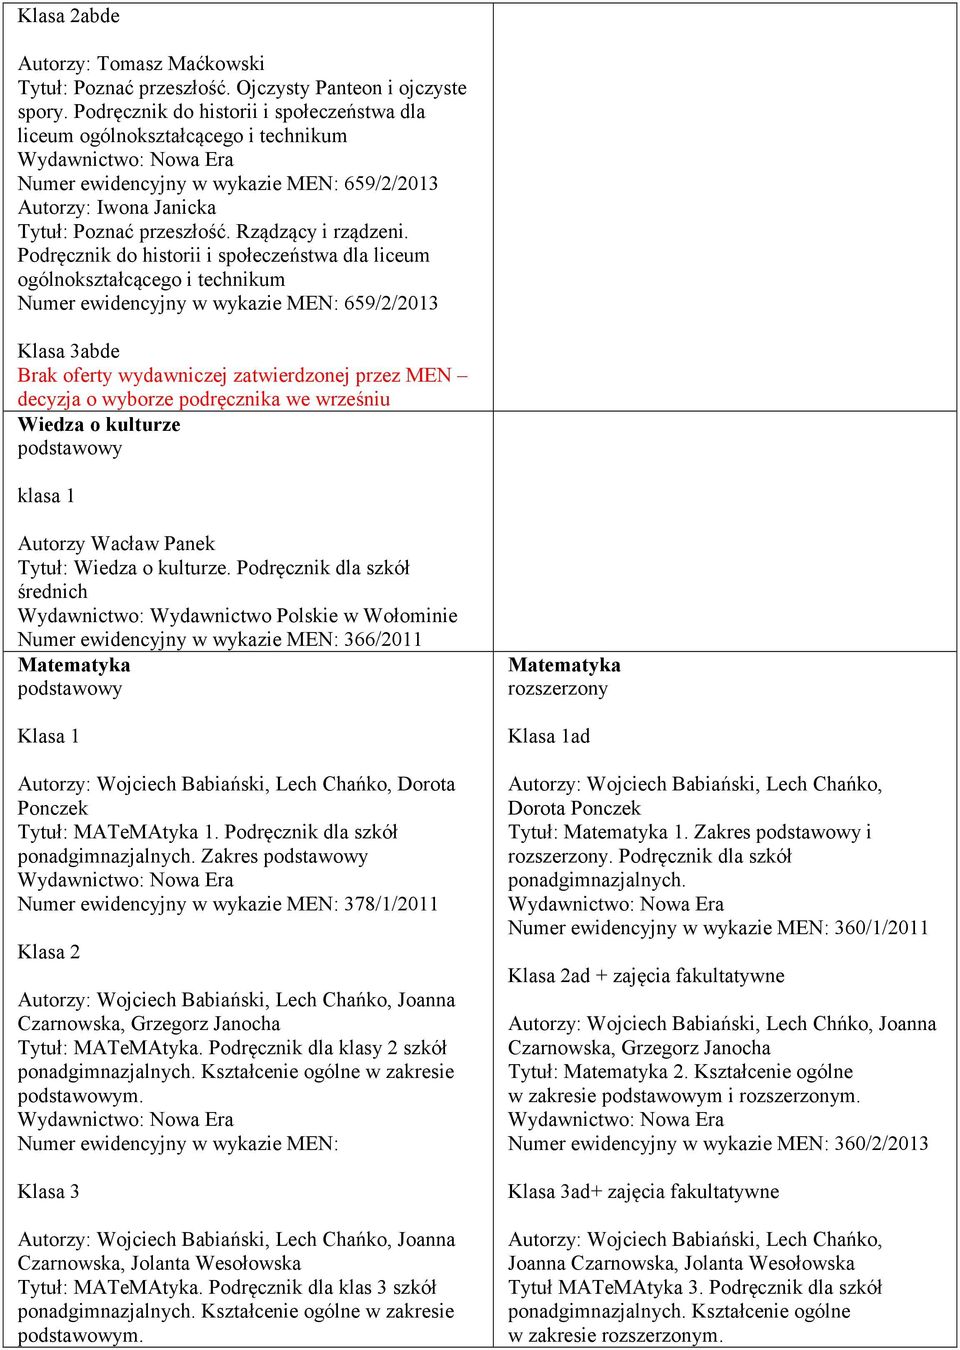 Podręcznik do historii i społeczeństwa dla liceum ogólnokształcącego i technikum Numer ewidencyjny w wykazie MEN: 659/2/2013 Klasa 3abde Brak oferty wydawniczej zatwierdzonej przez MEN decyzja o